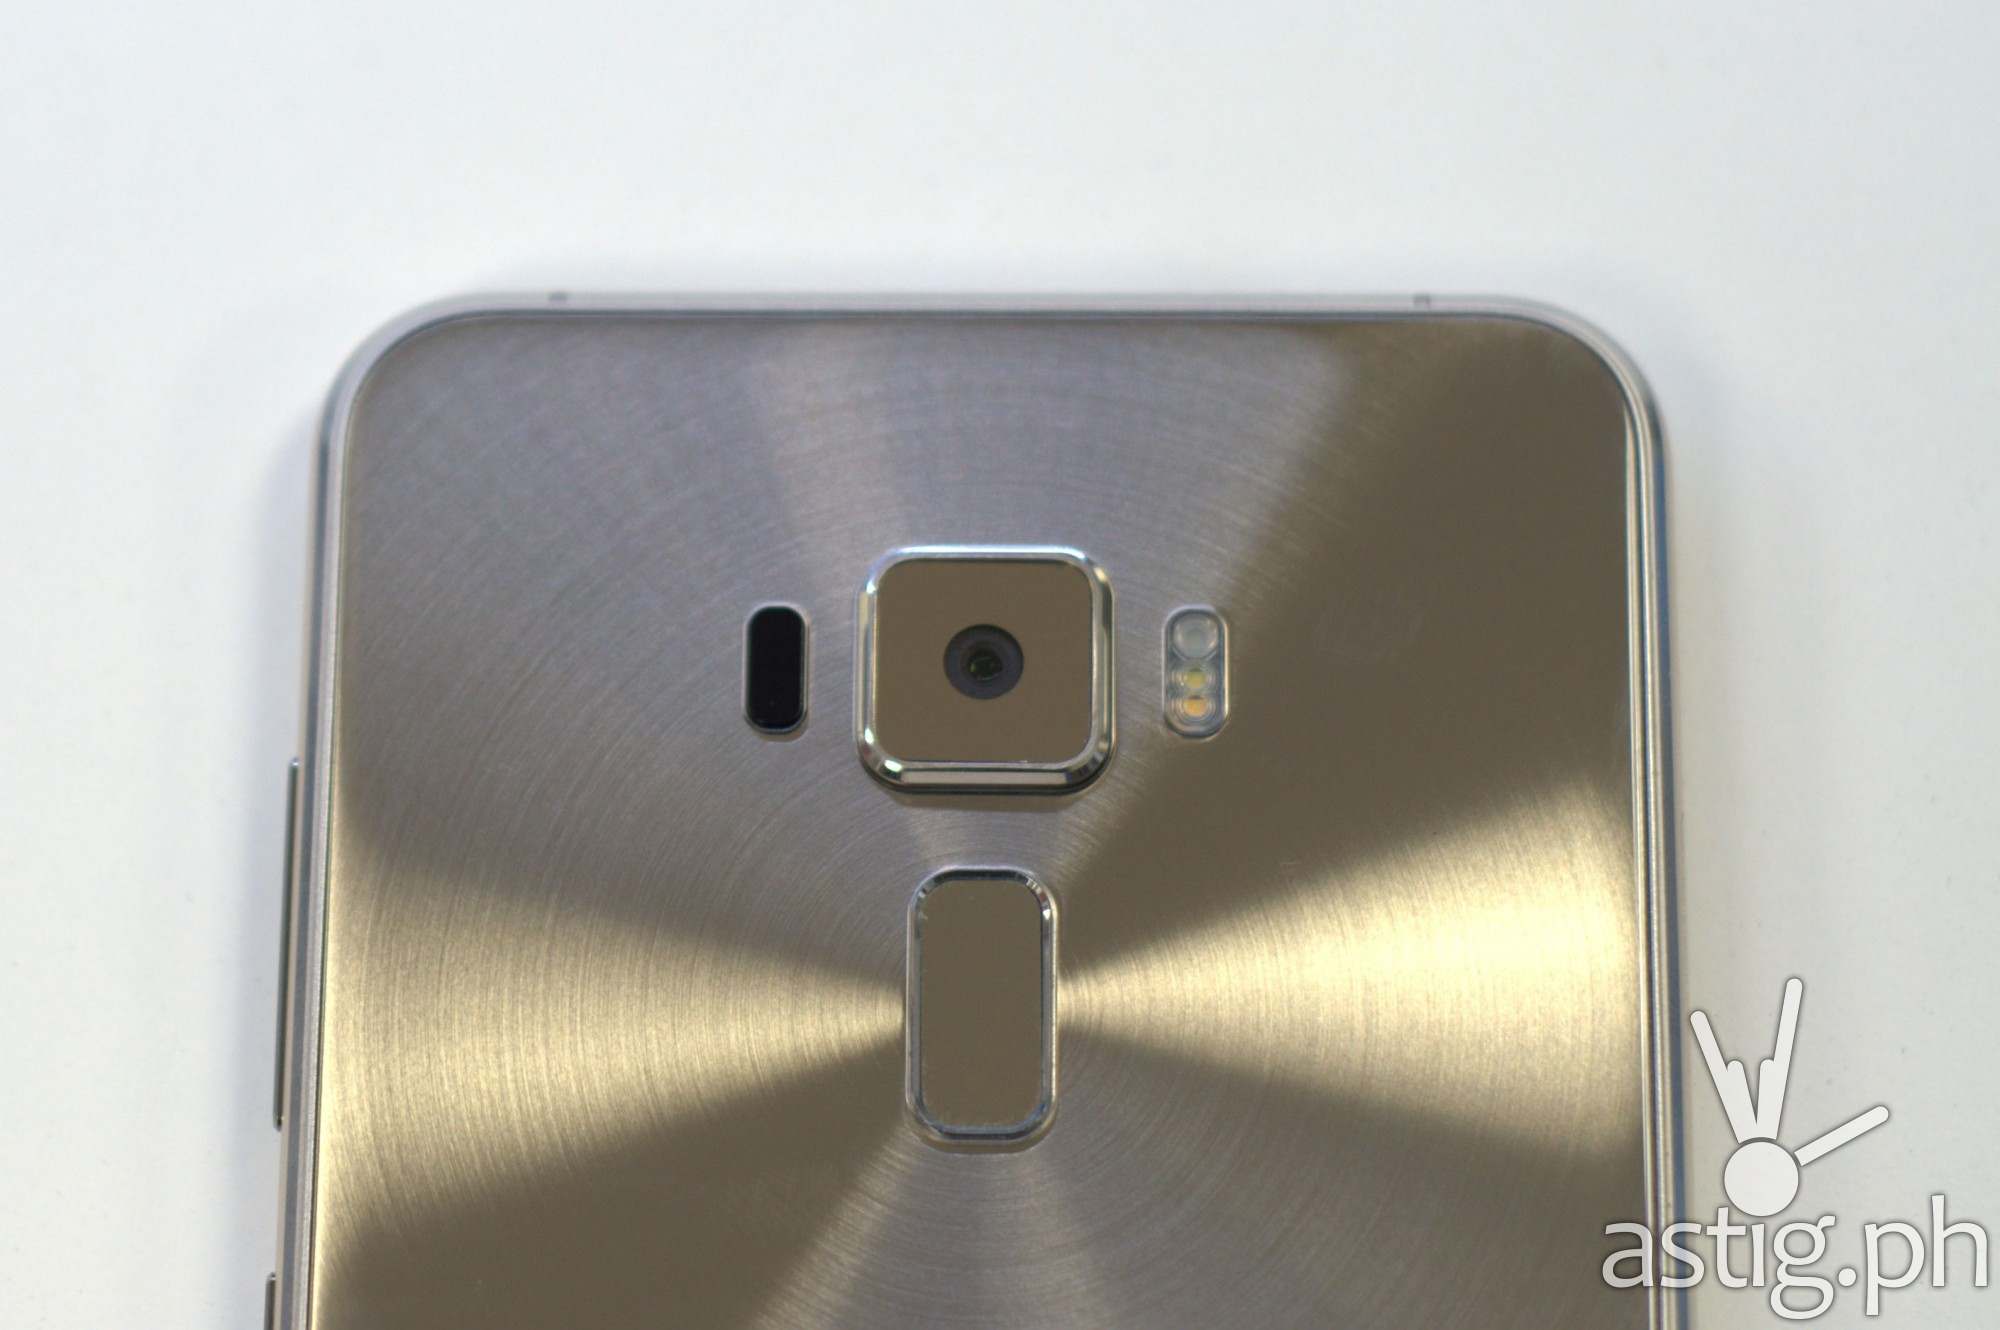 ASUS ZenFone 3 5.5 gold back upper showing fingerprint scanner and camera